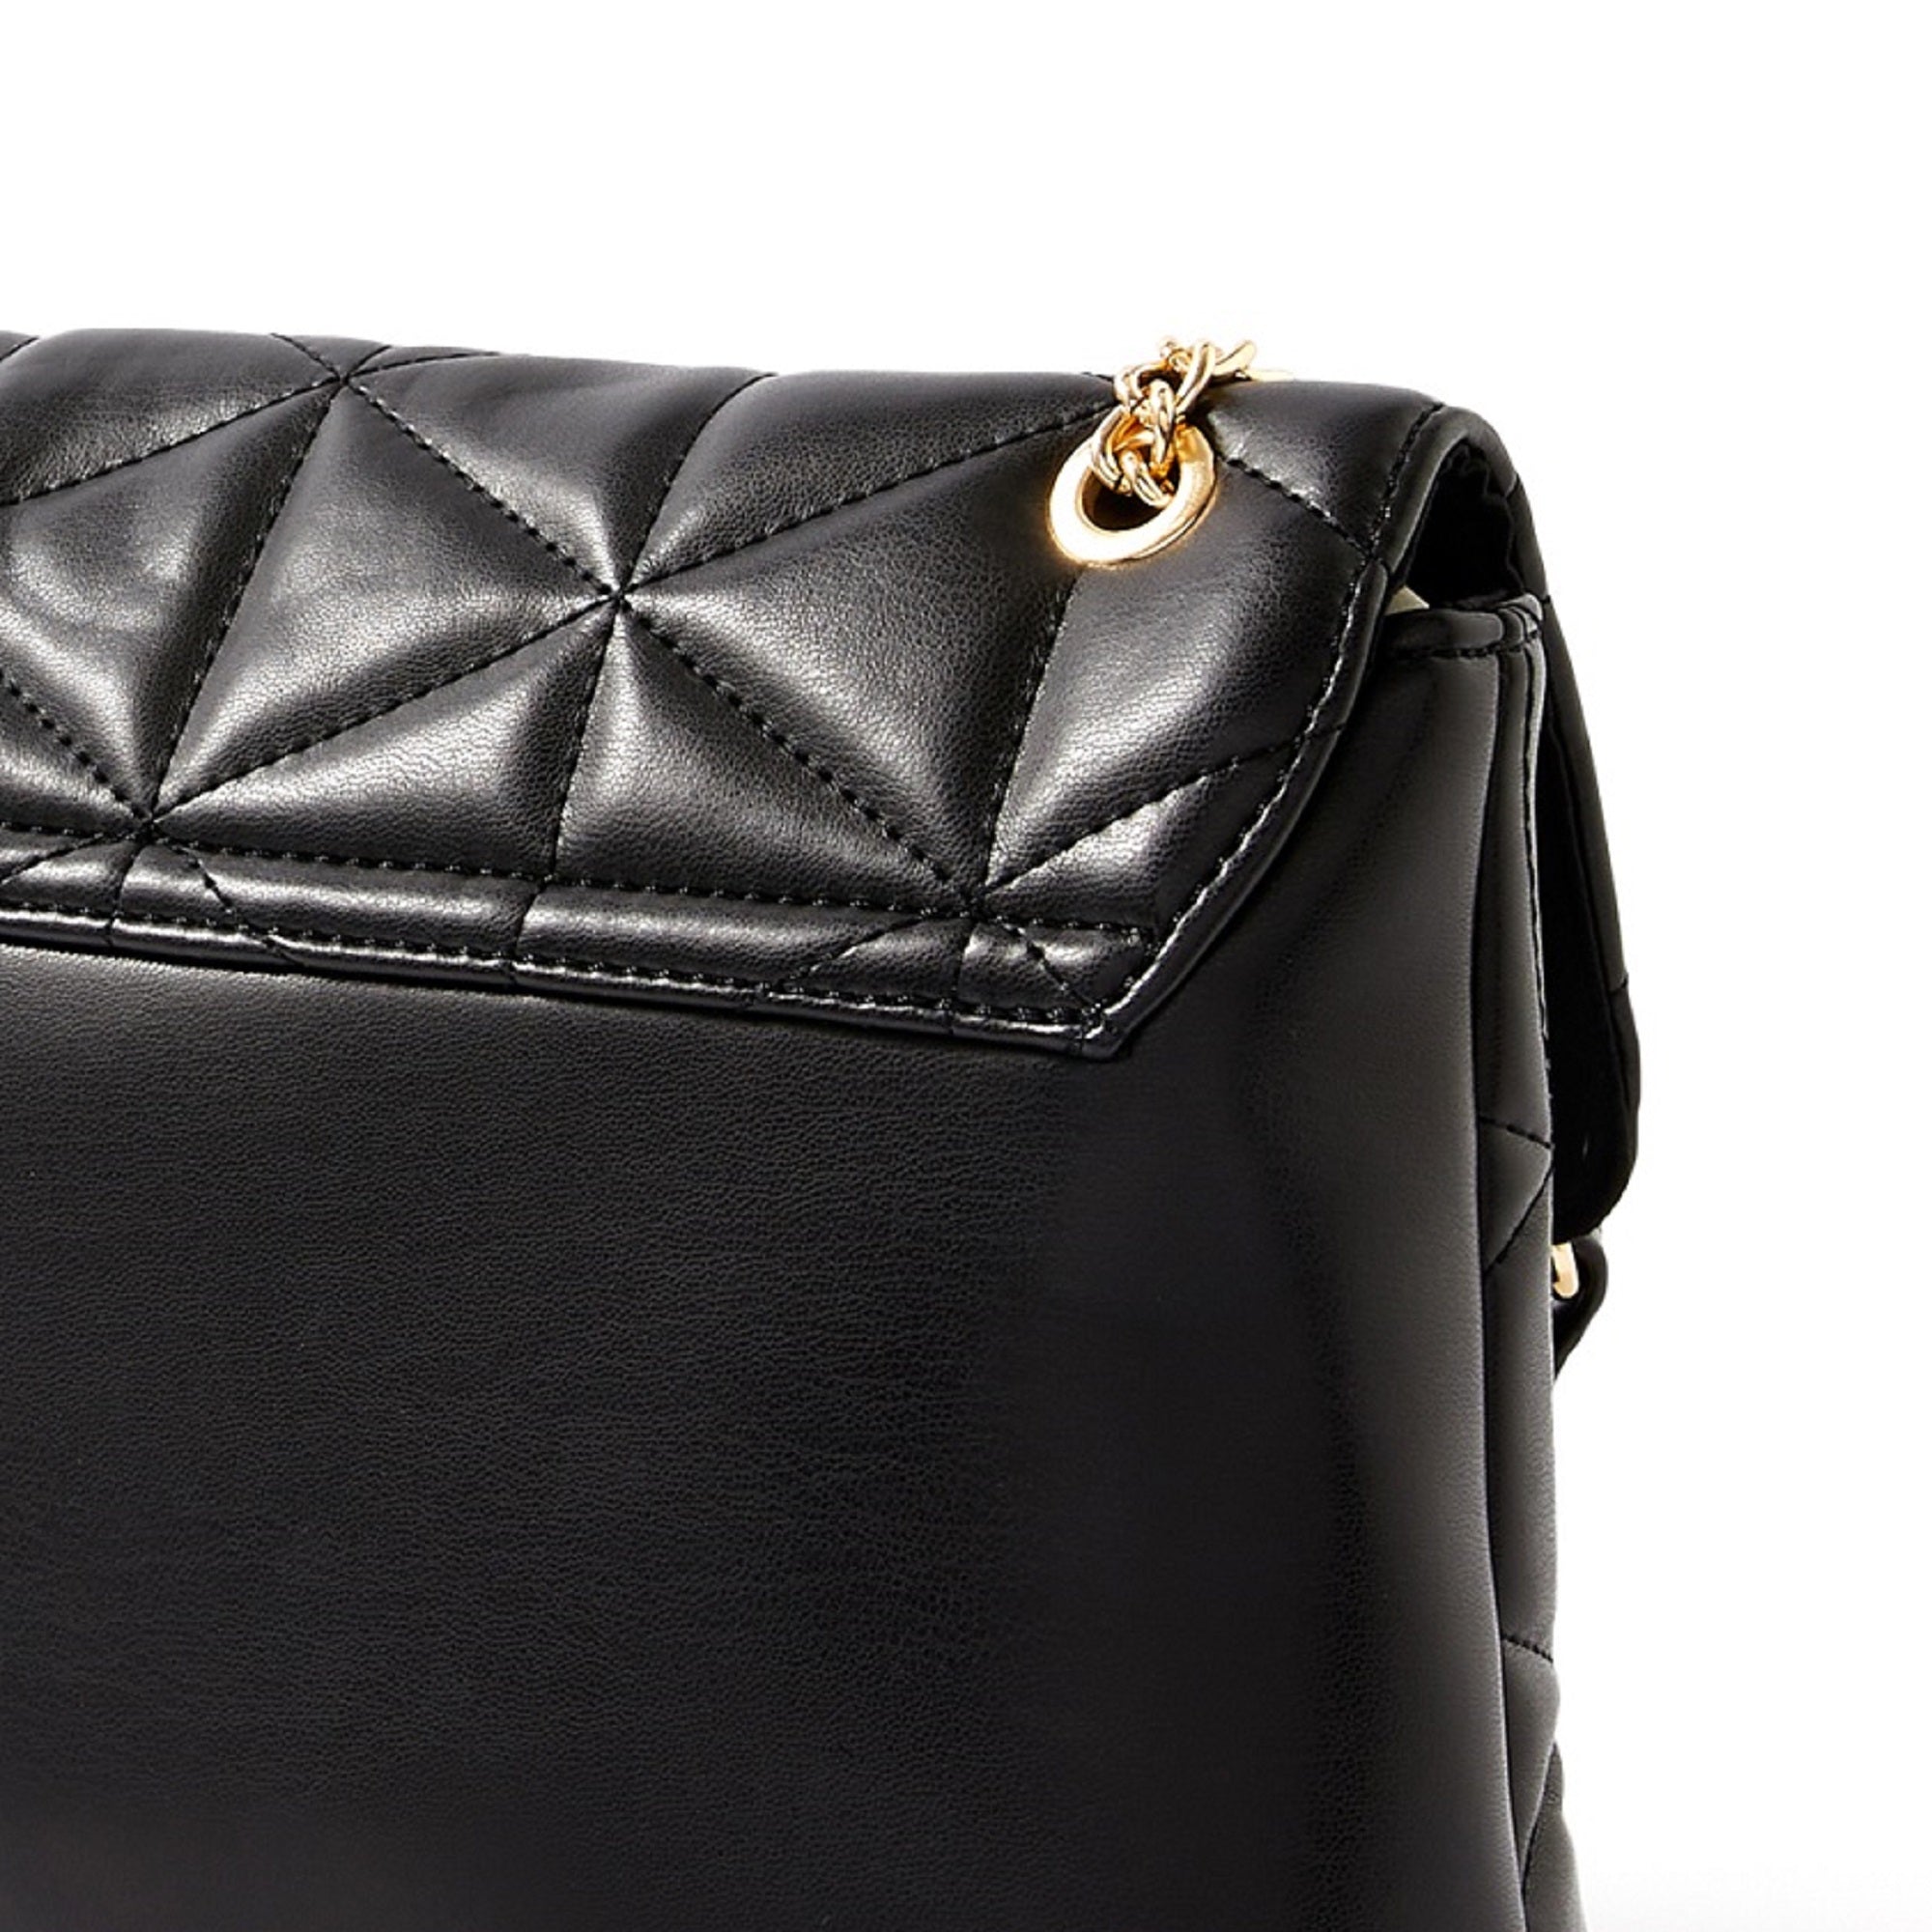 Accessorize London women's Faux Leather Black Eva Quilt Shoulder Sling bag - Accessorize India